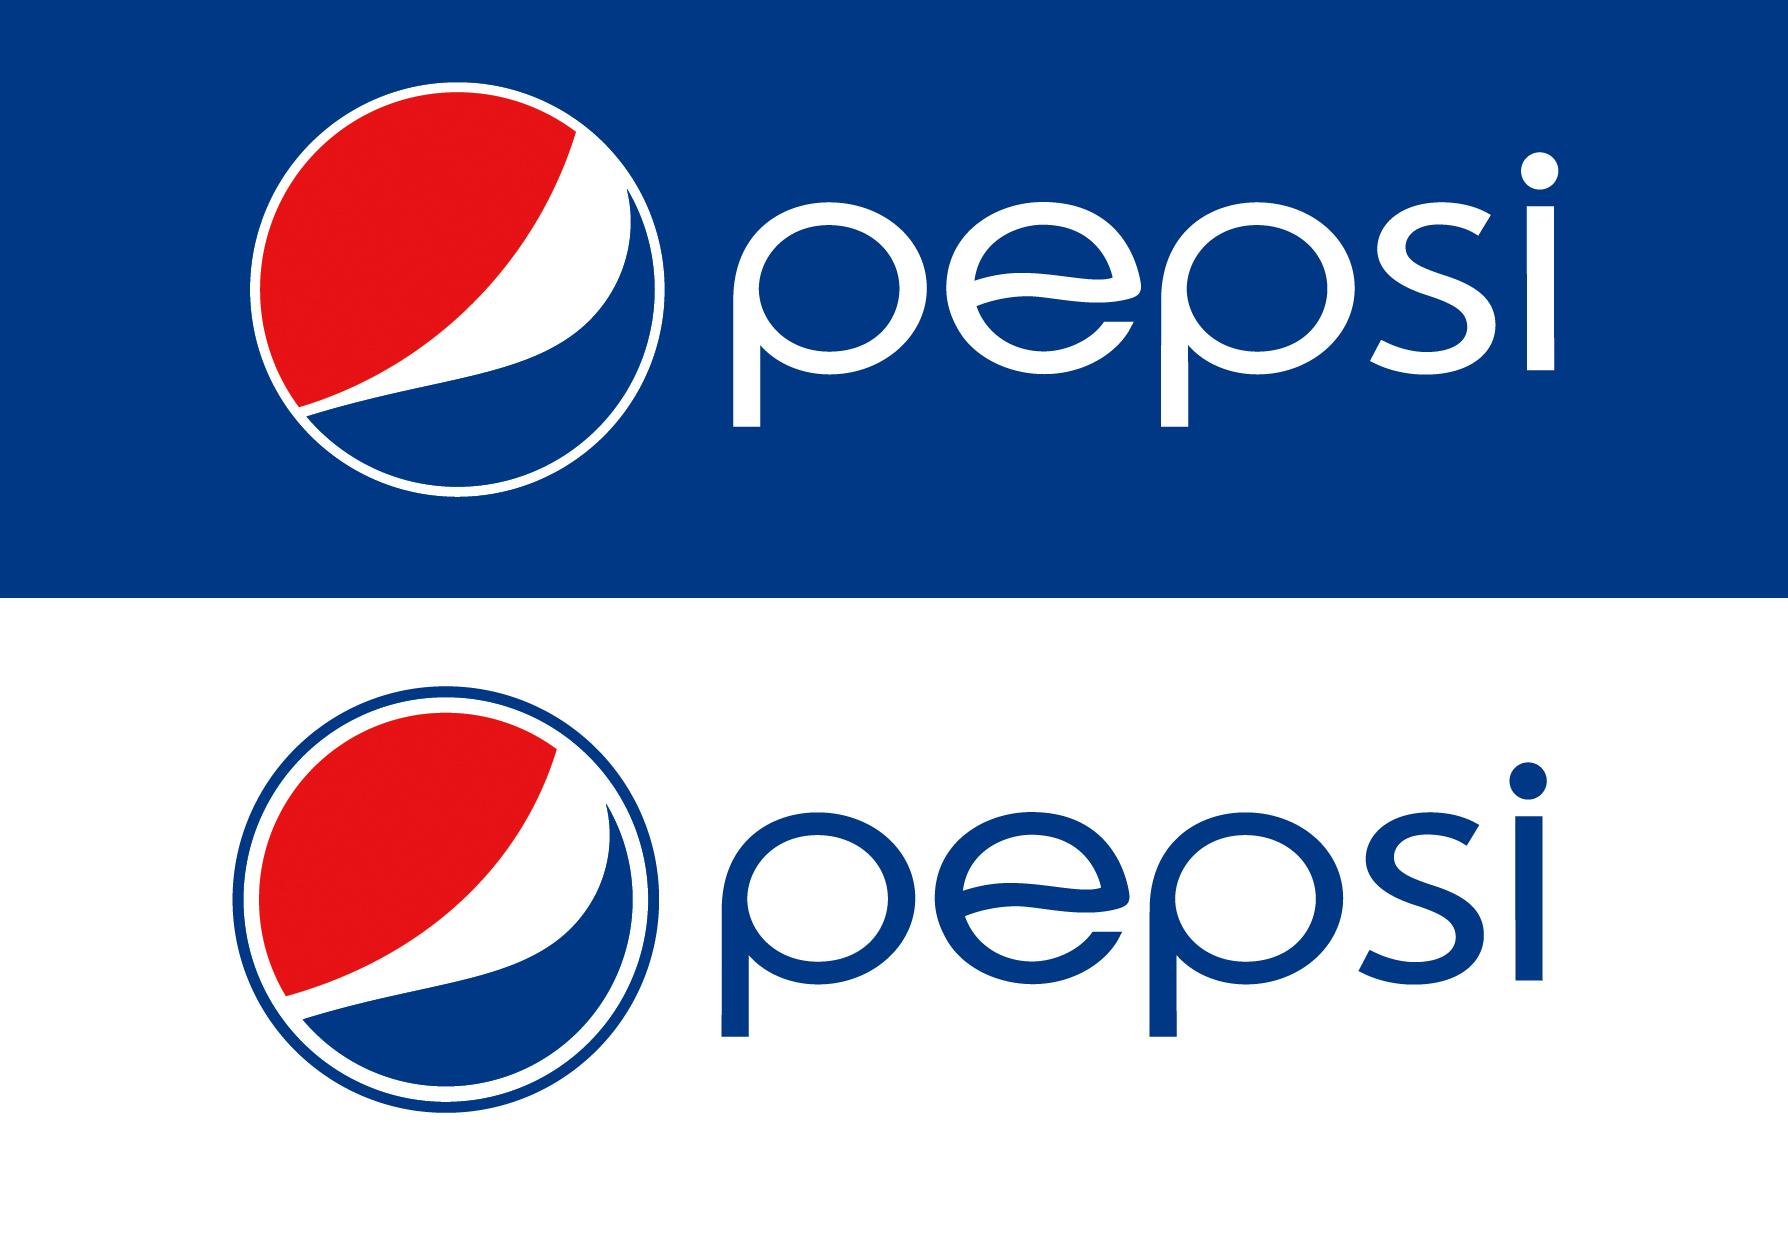 Với sự thay đổi này, logo của nhãn hiệu nước giải khát Pepsi có phần nổi bật và dịu mắt hơn (Ảnh: fedudesign)